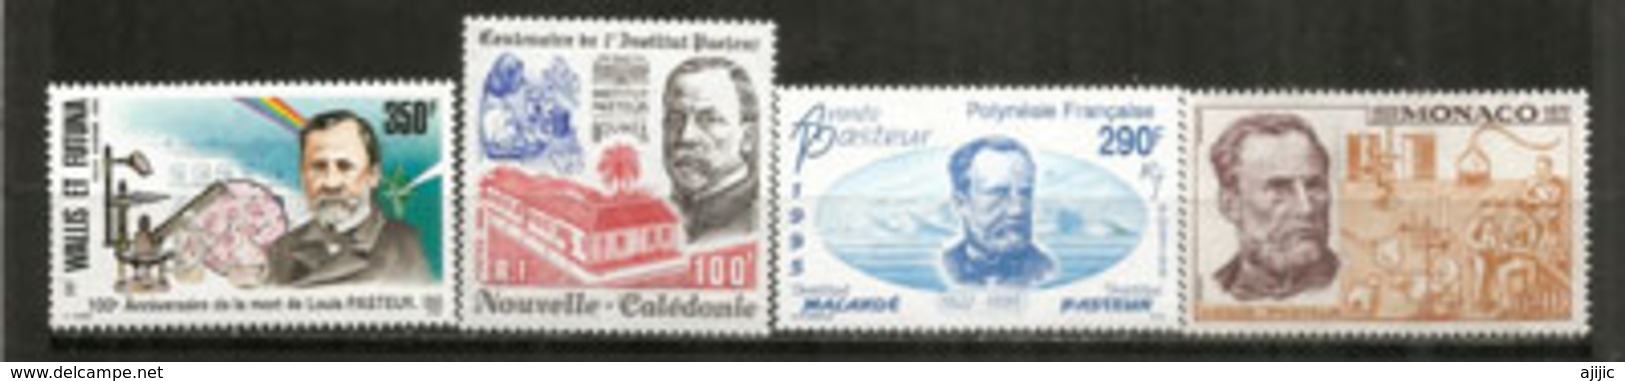 Hommage à Louis Pasteur.  4 Timbres Neufs ** Wallis Futuna,Polynésie,Monaco,Nouvelle-Calédonie. Côte 24  € - Louis Pasteur